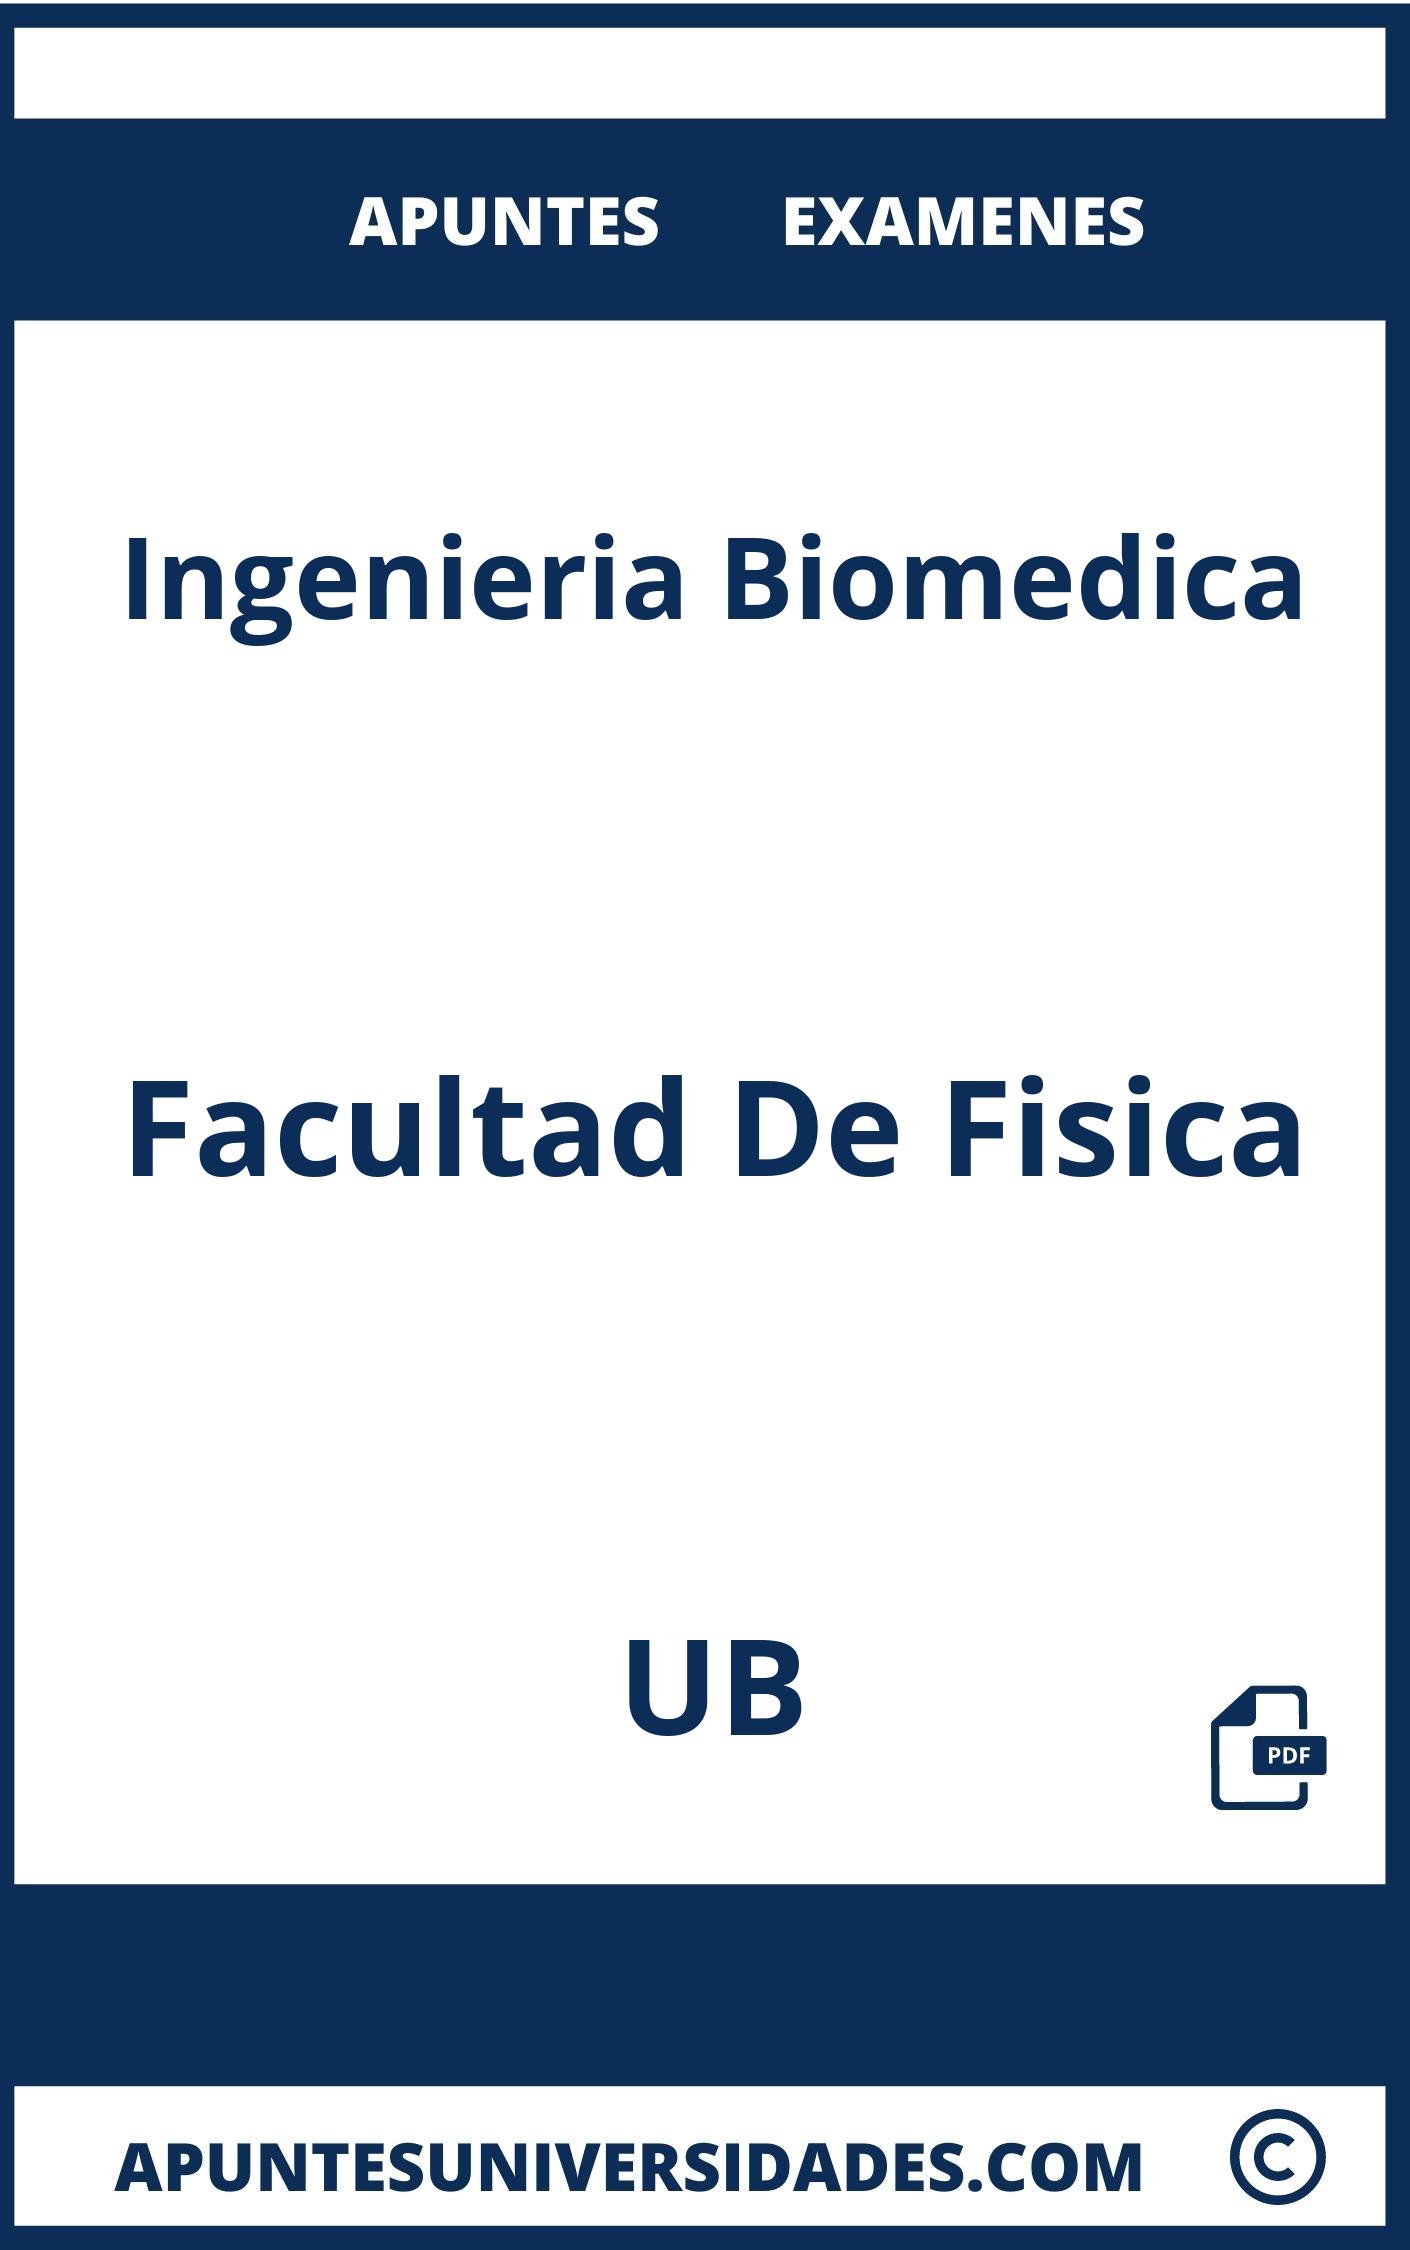 Examenes Apuntes Ingenieria Biomedica UB